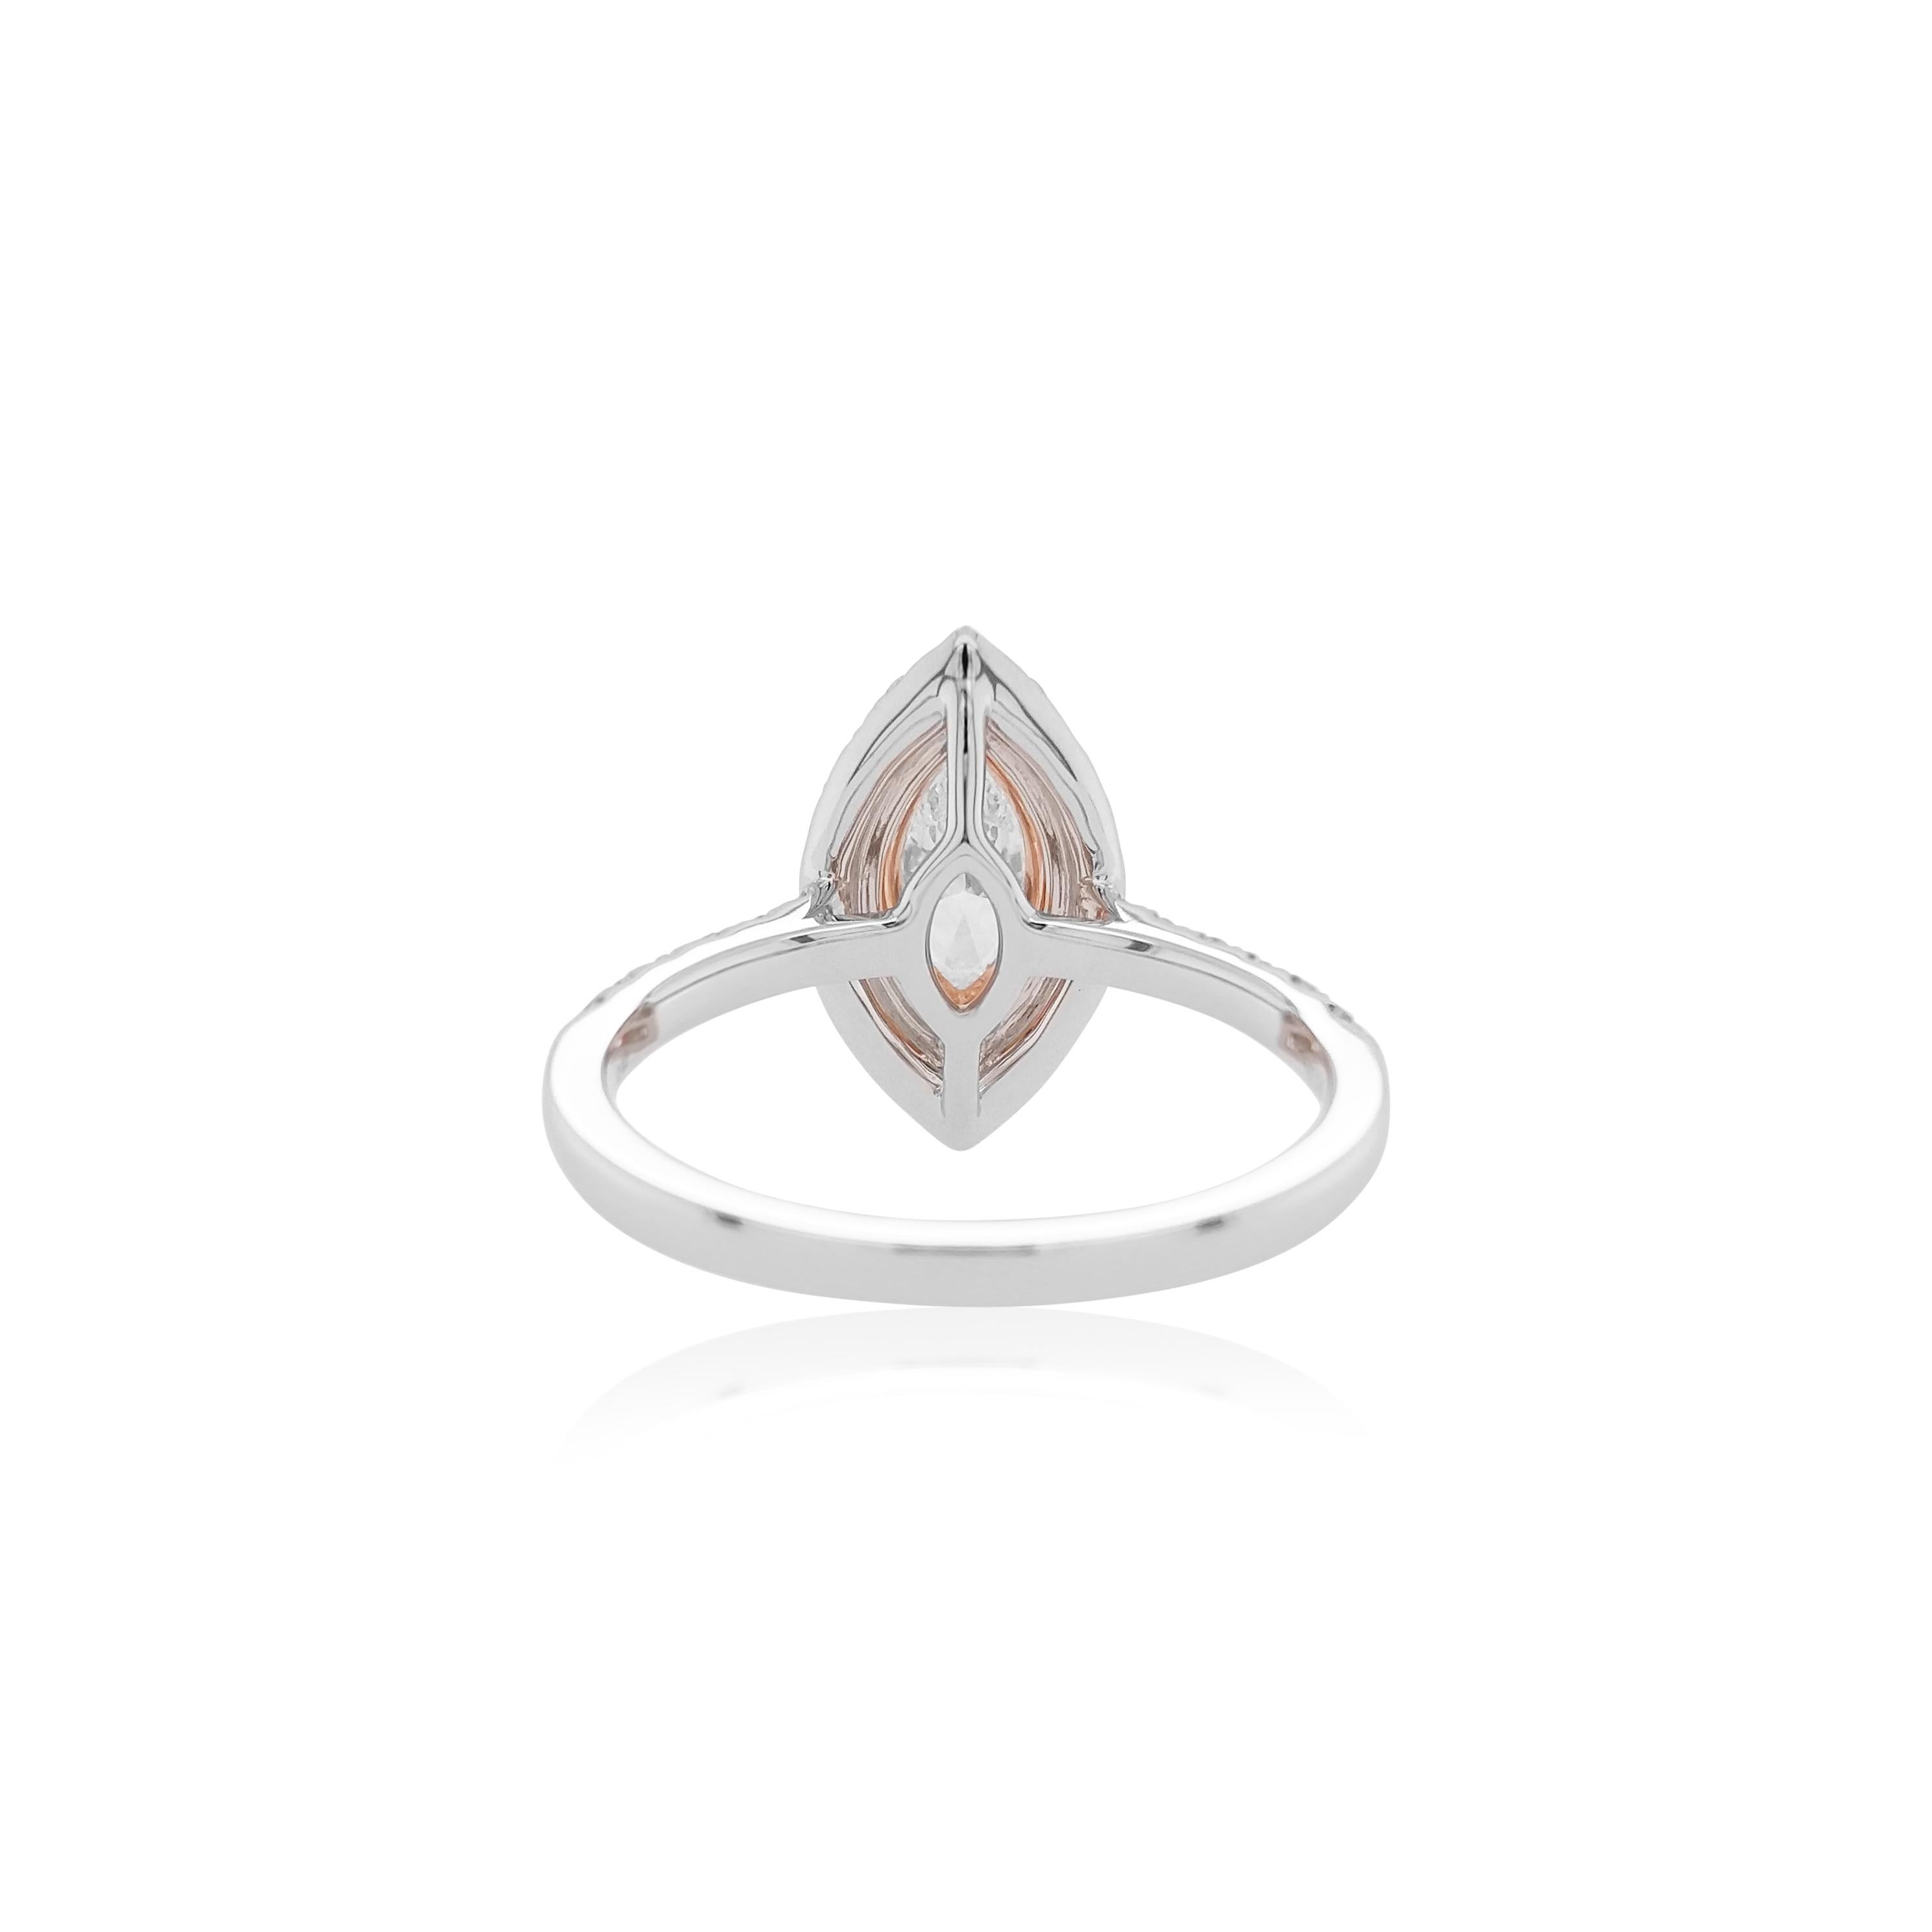 Dieser auffällige Ring aus 18 Karat Gold trägt in der Mitte einen weißen Diamanten in Marquise-Form von außergewöhnlicher Qualität, umgeben von subtilen Halos aus natürlichen rosa Argyle-Diamanten und atemberaubenden weißen Diamanten. Dieser